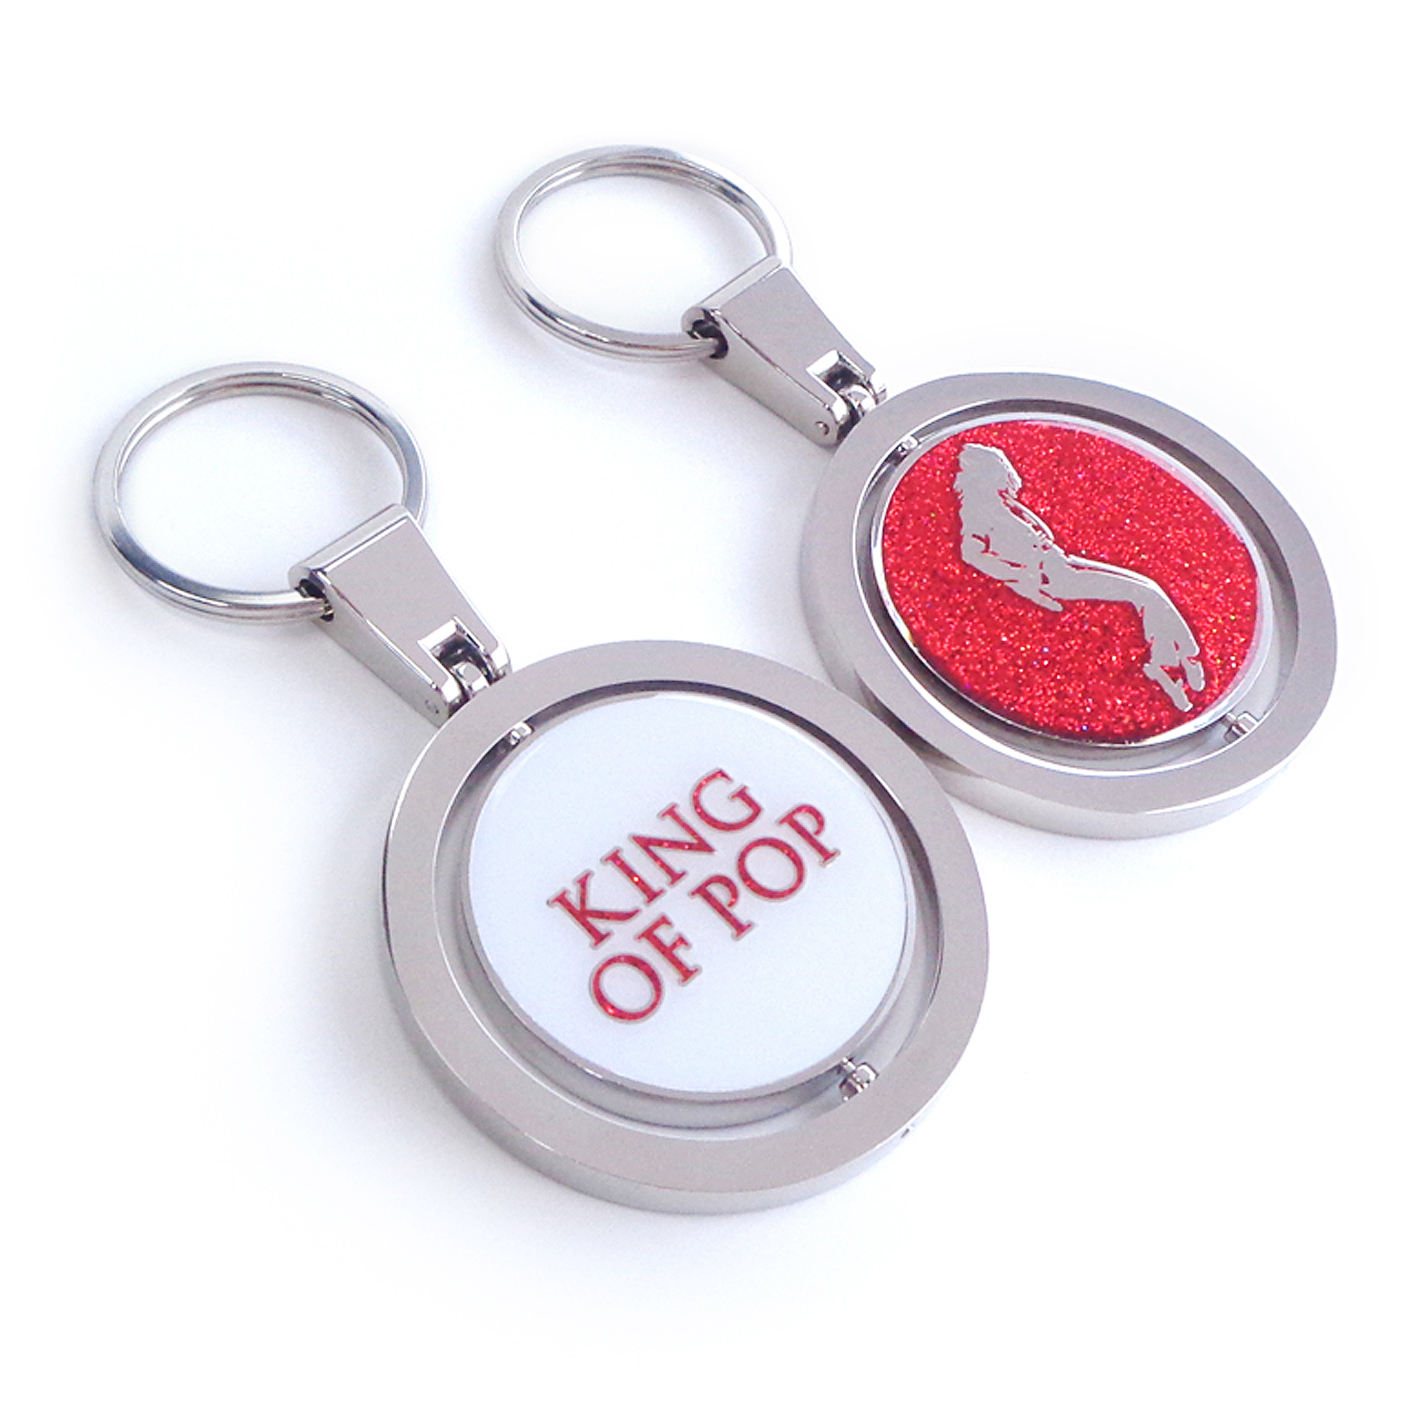 Conception gratuite Porte-clés en métal sur mesure Porte-clés avec logo en or Porte-clés mignon Anime